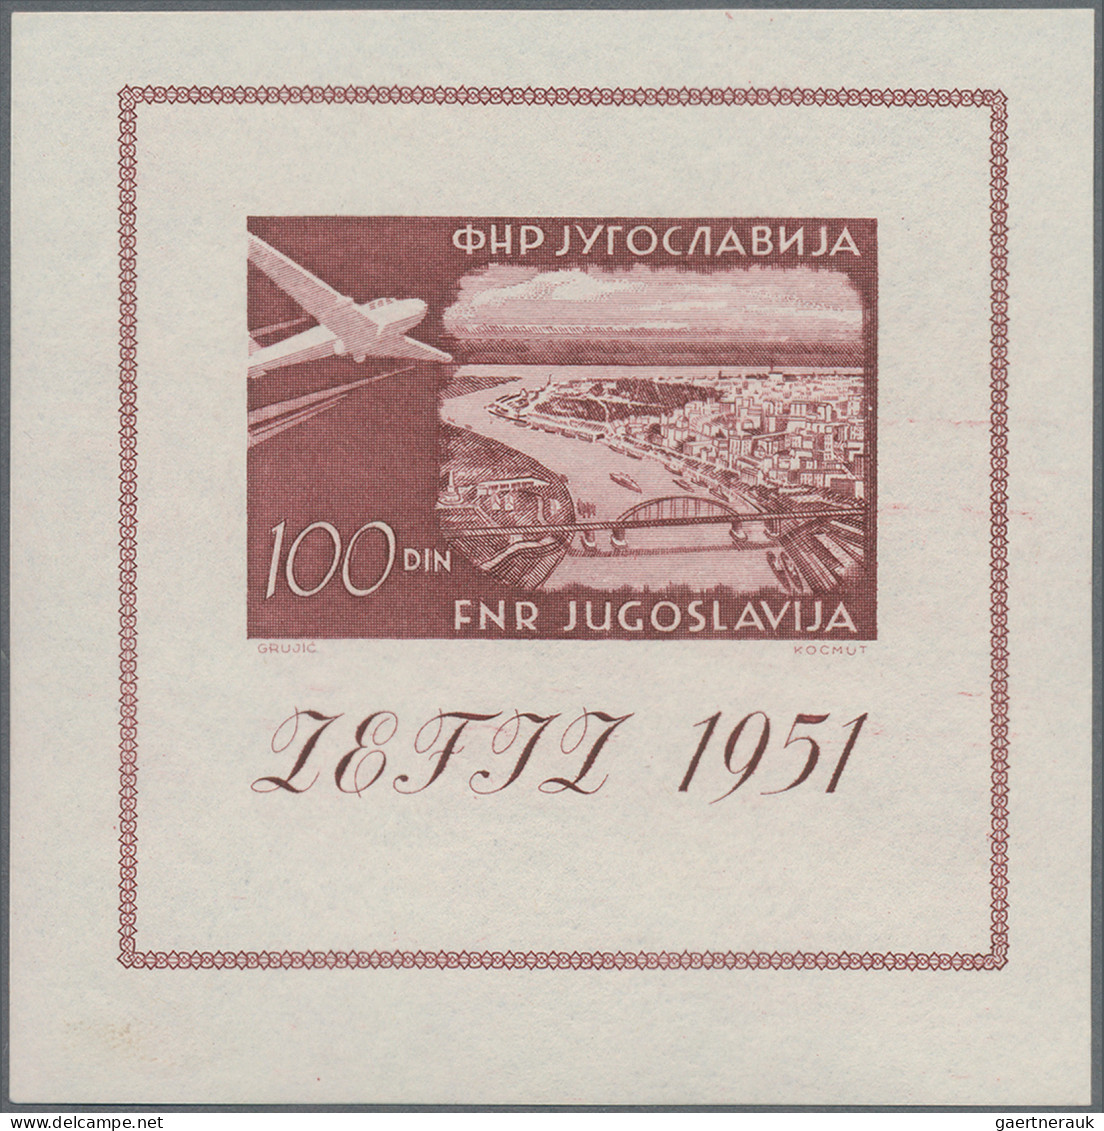 Yugoslavia: 1951, 1961, Briefmarkenausstellung ZEFIZ, 2 postfrische Blocks, dazu